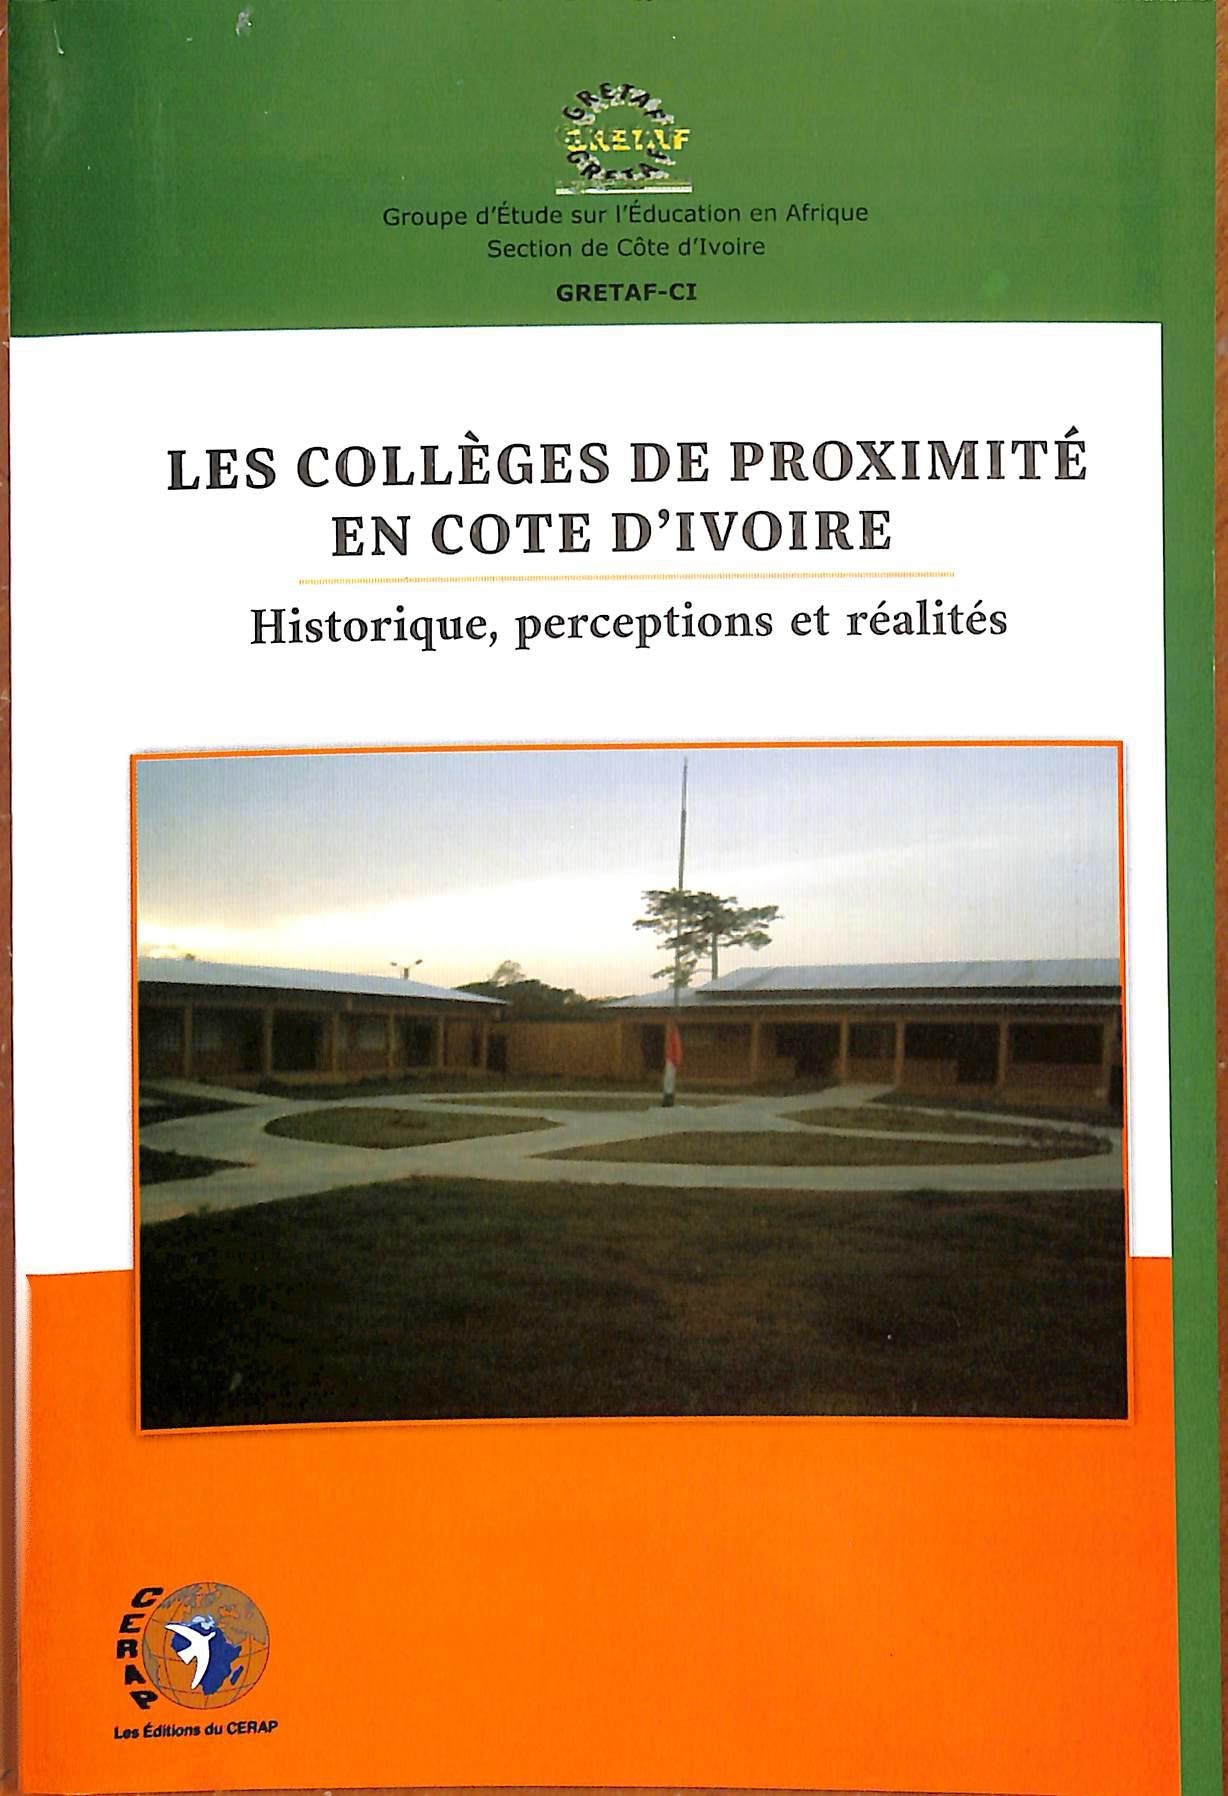 Les collèges de proximité en Cote d'Ivoire